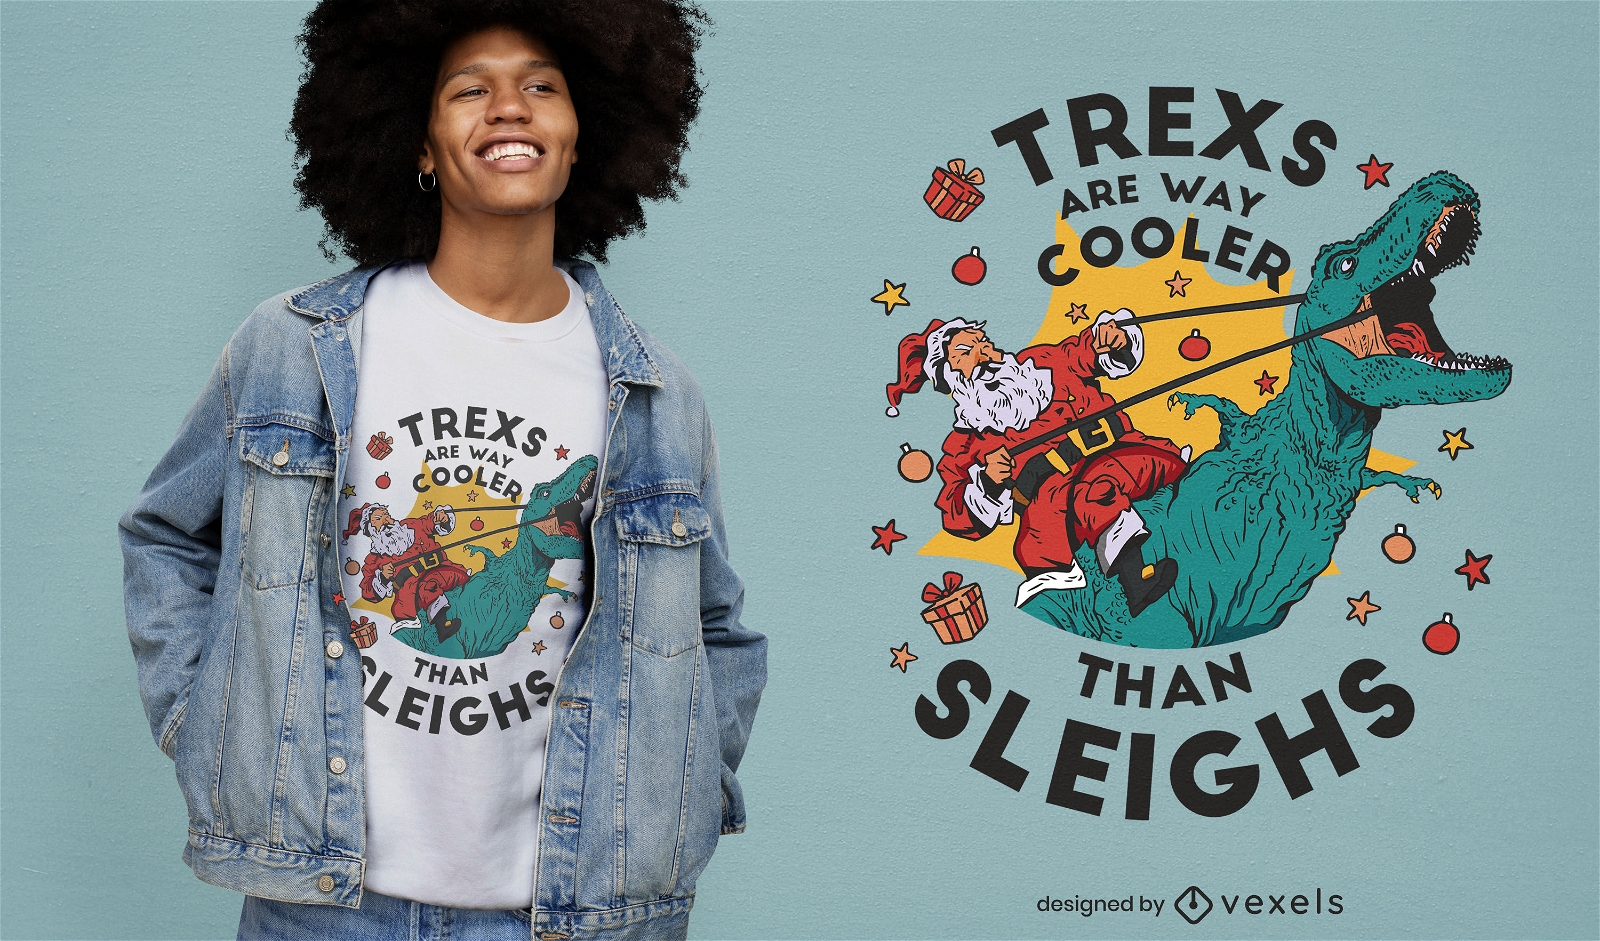 Divertido diseño de camiseta navideña de t-rex.